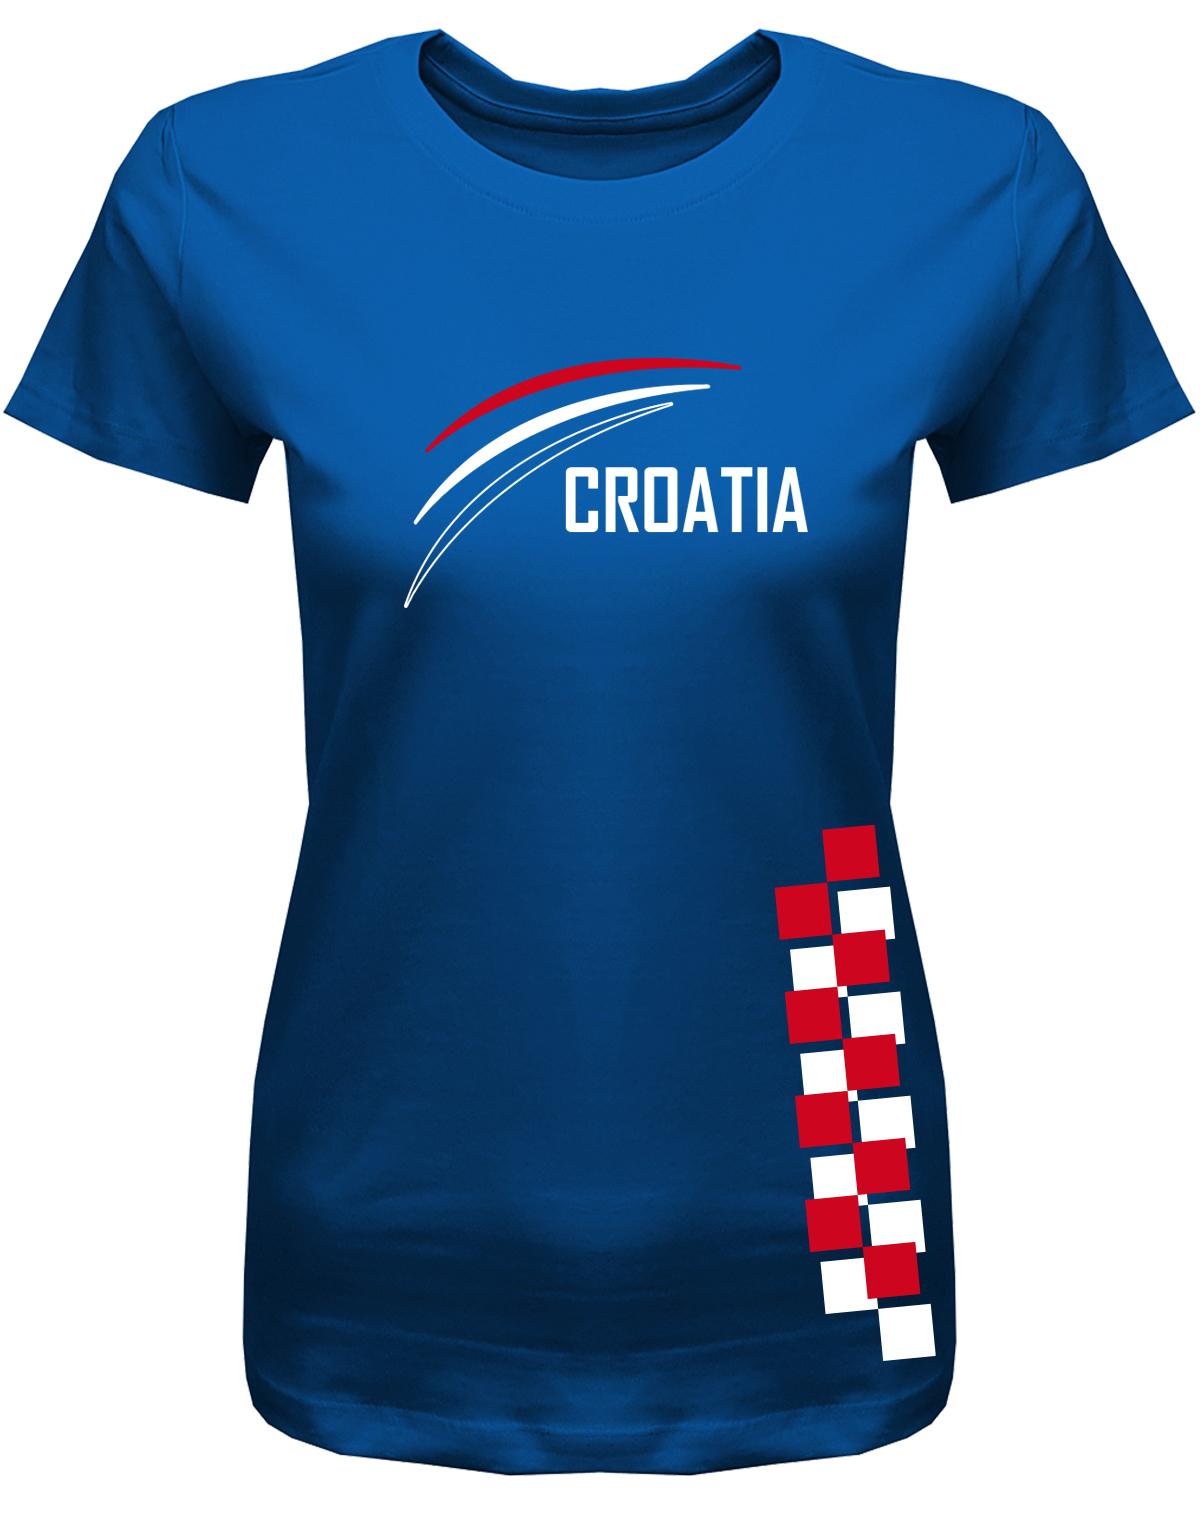 Croatia-Damen-Shirt